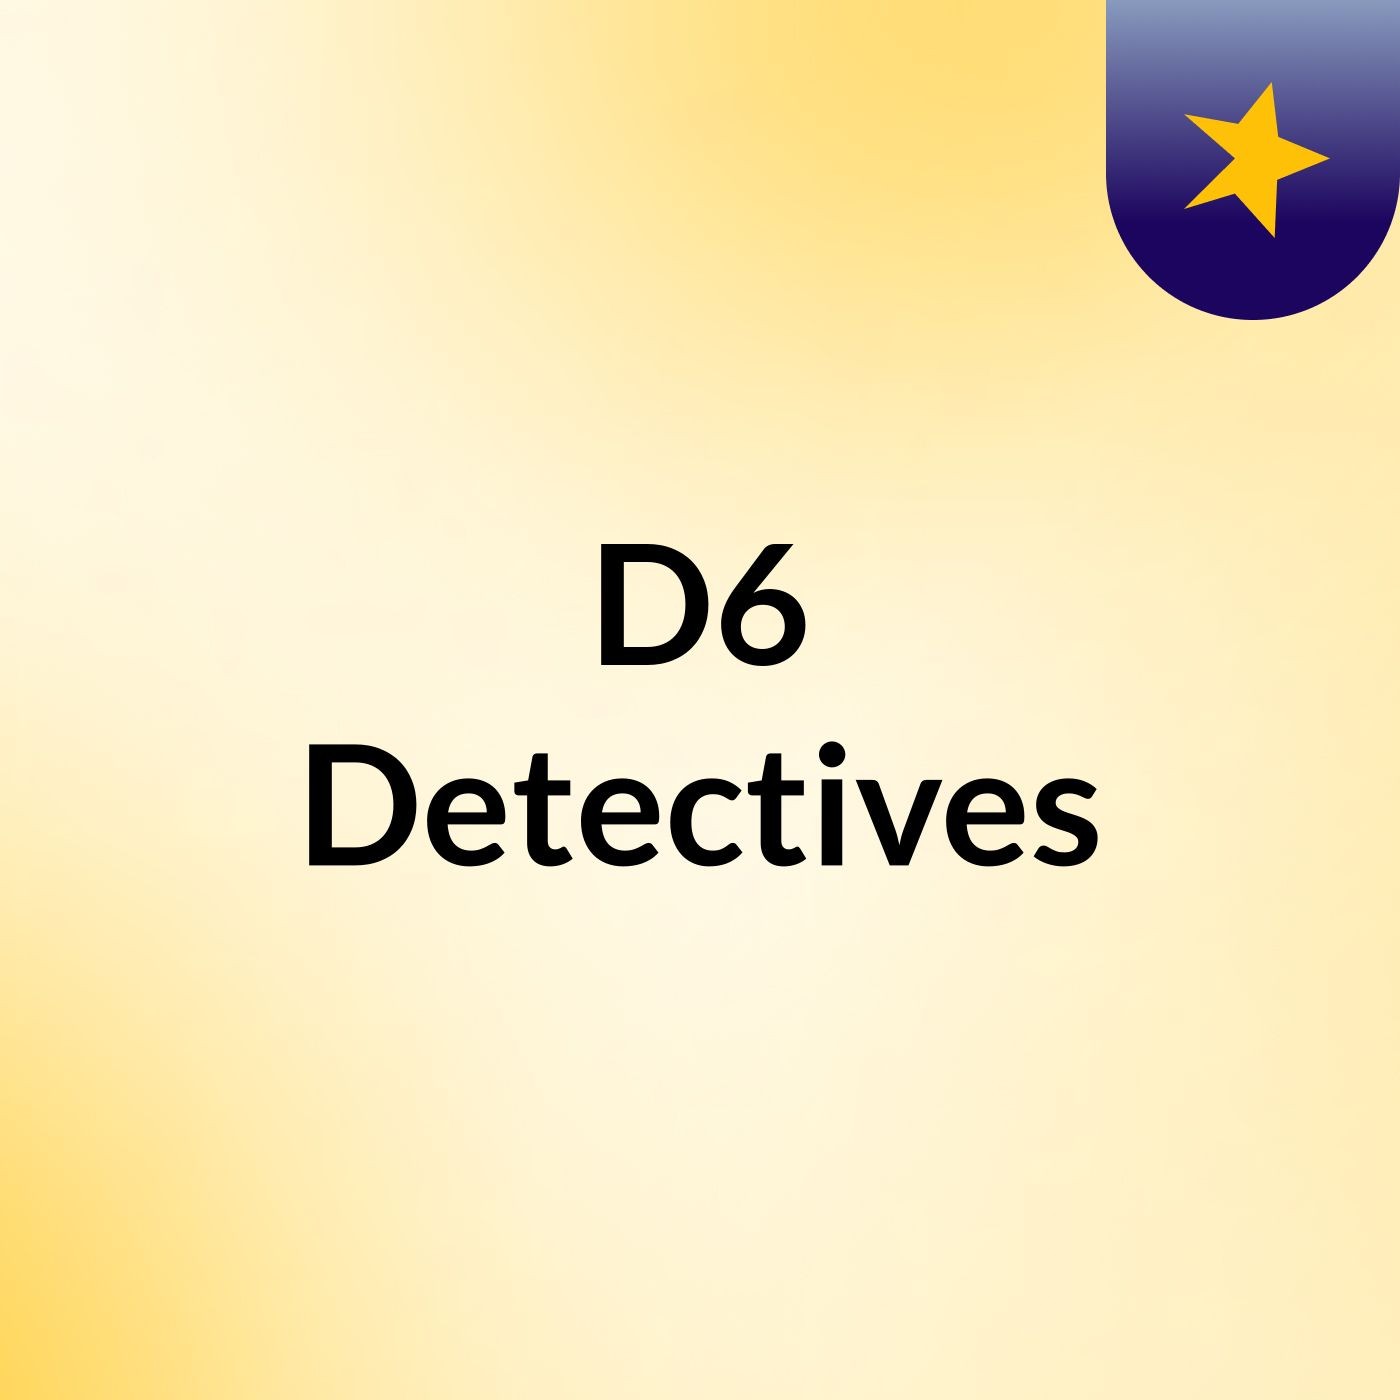 D6 Detectives